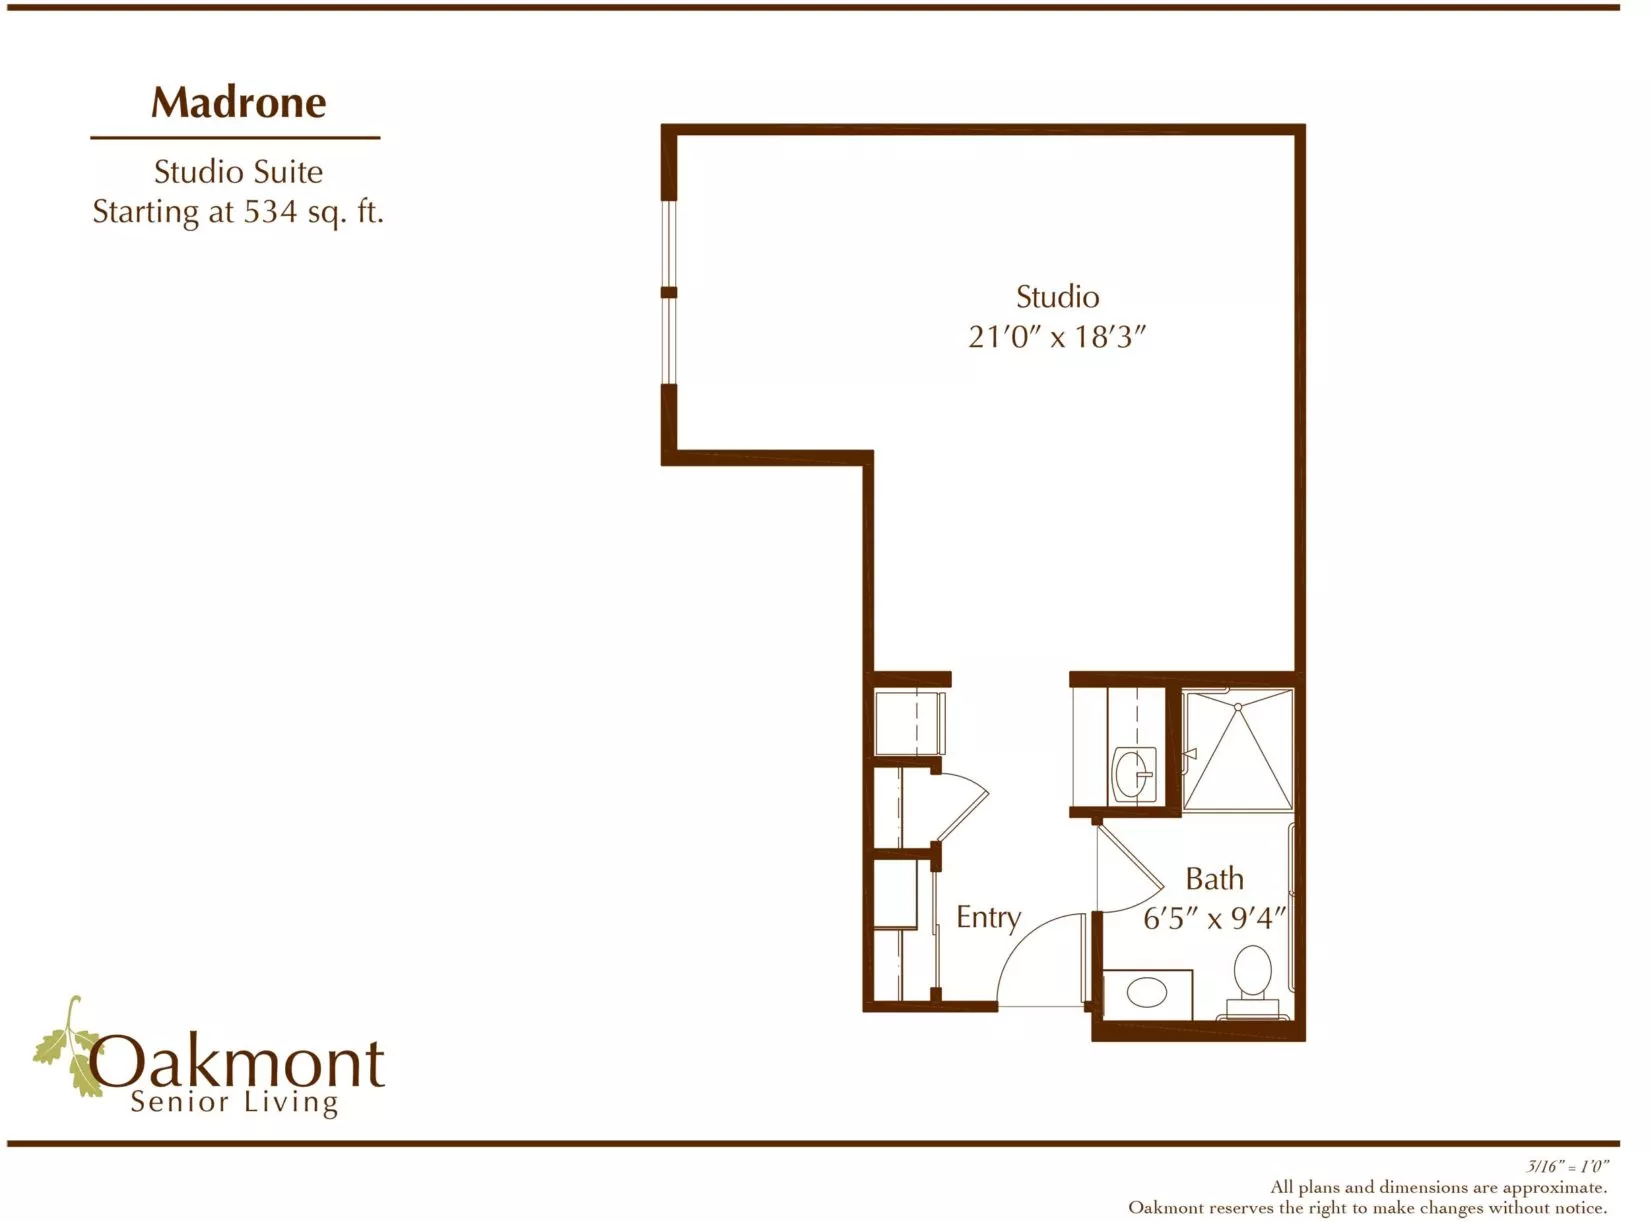 Madrone Studio suite floor plan